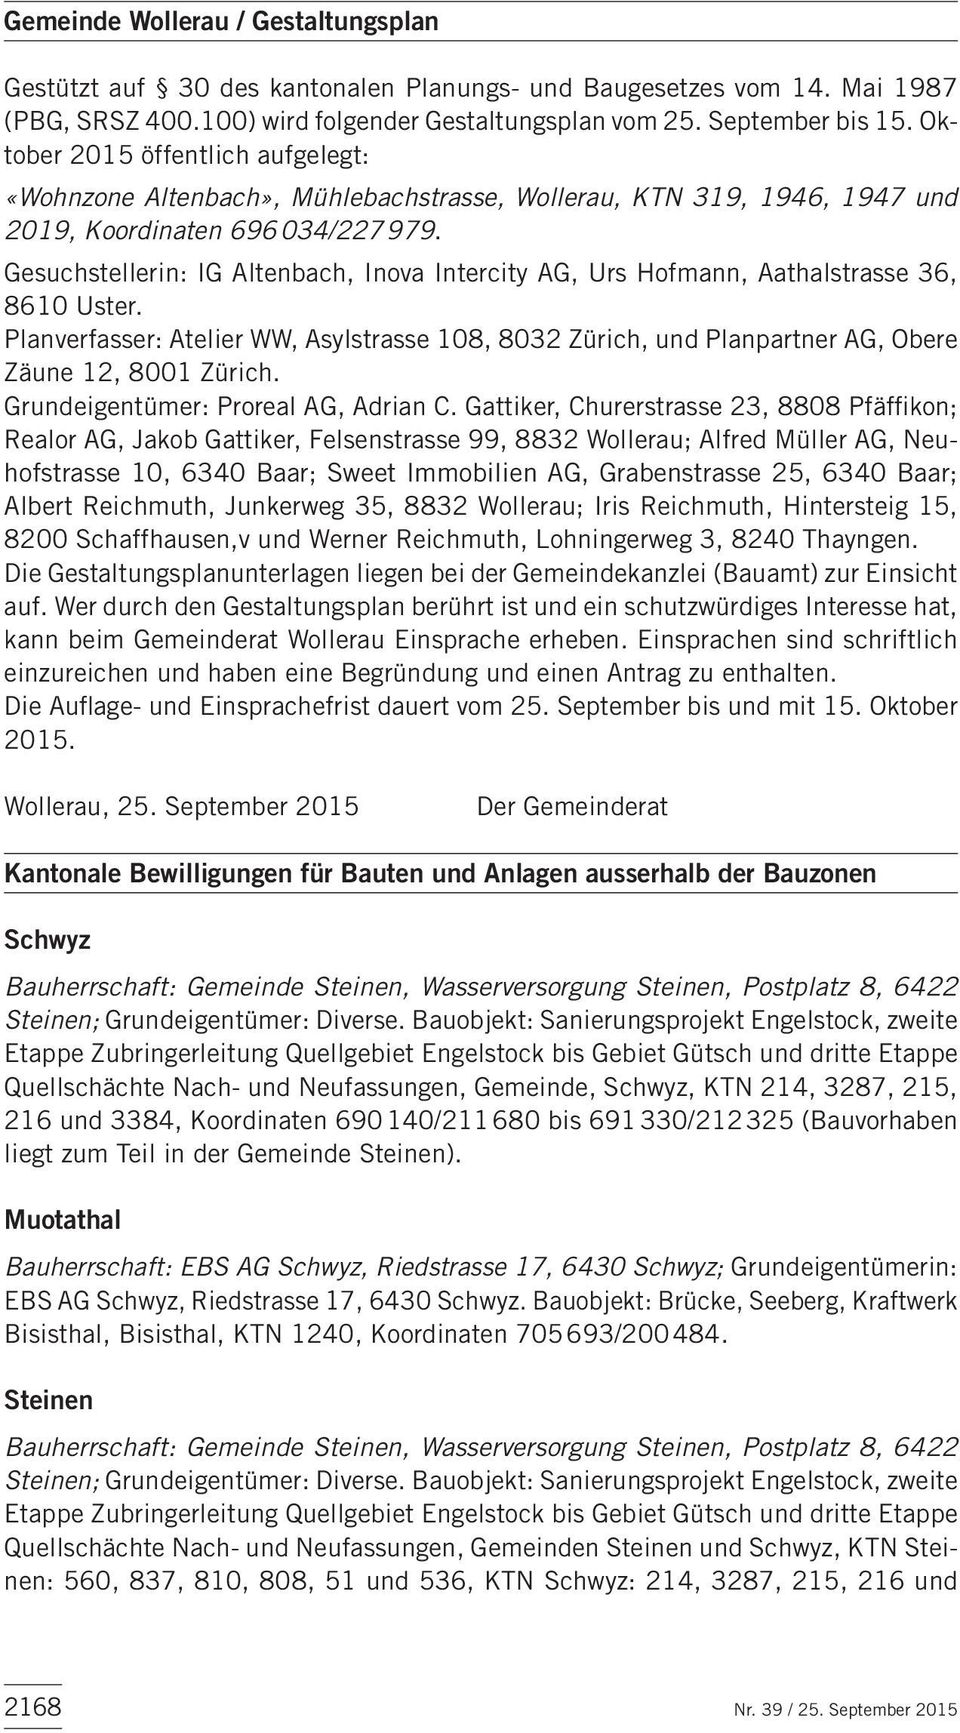 Gesuchstellerin: IG Altenbach, Inova Intercity AG, Urs Hofmann, Aathalstrasse 36, 8610 Uster. Planverfasser: Atelier WW, Asylstrasse 108, 8032 Zürich, und Planpartner AG, Obere Zäune 12, 8001 Zürich.